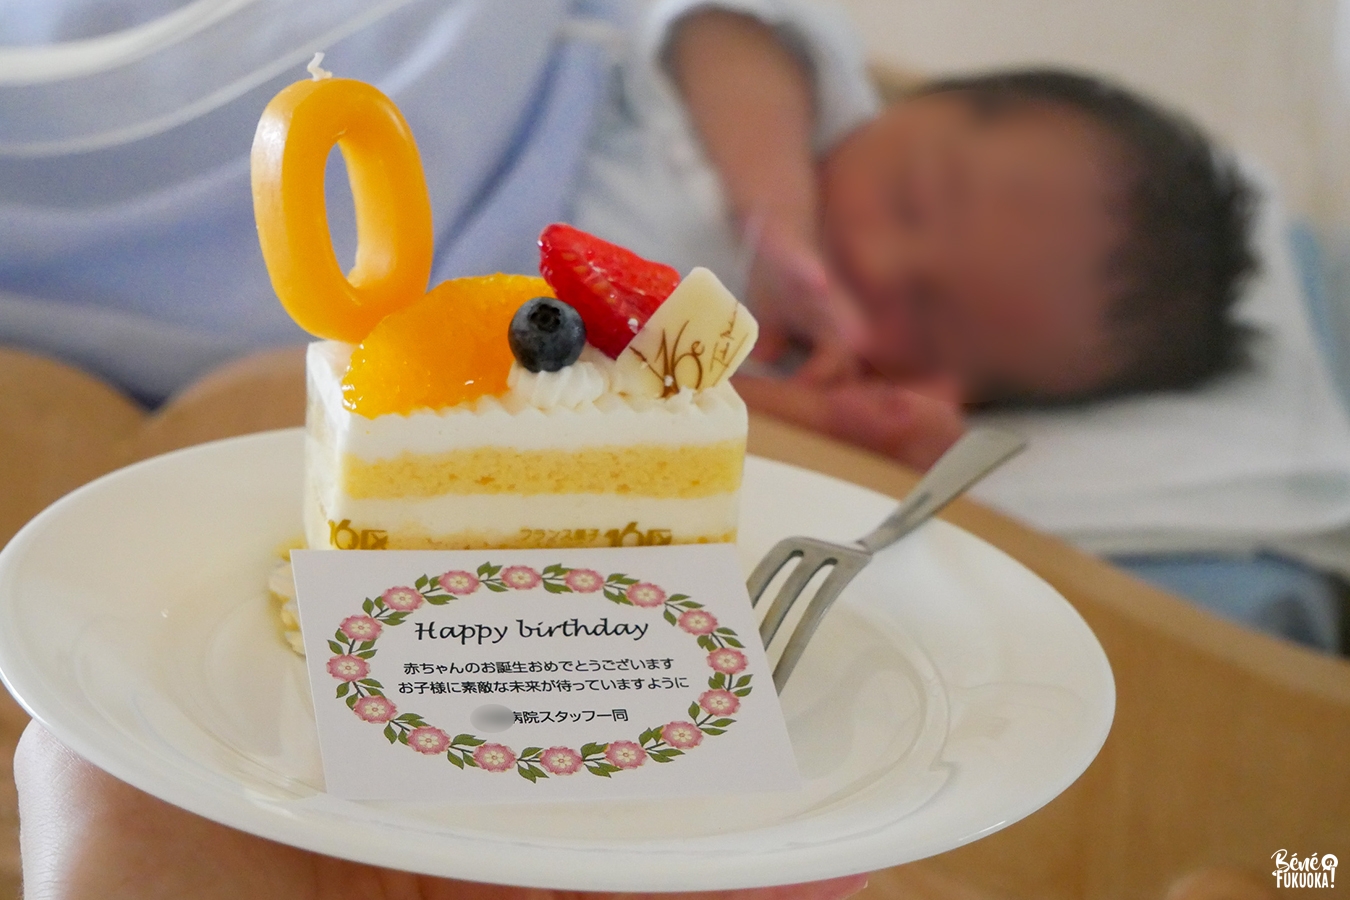 Le goûter dans une maternité japonaise